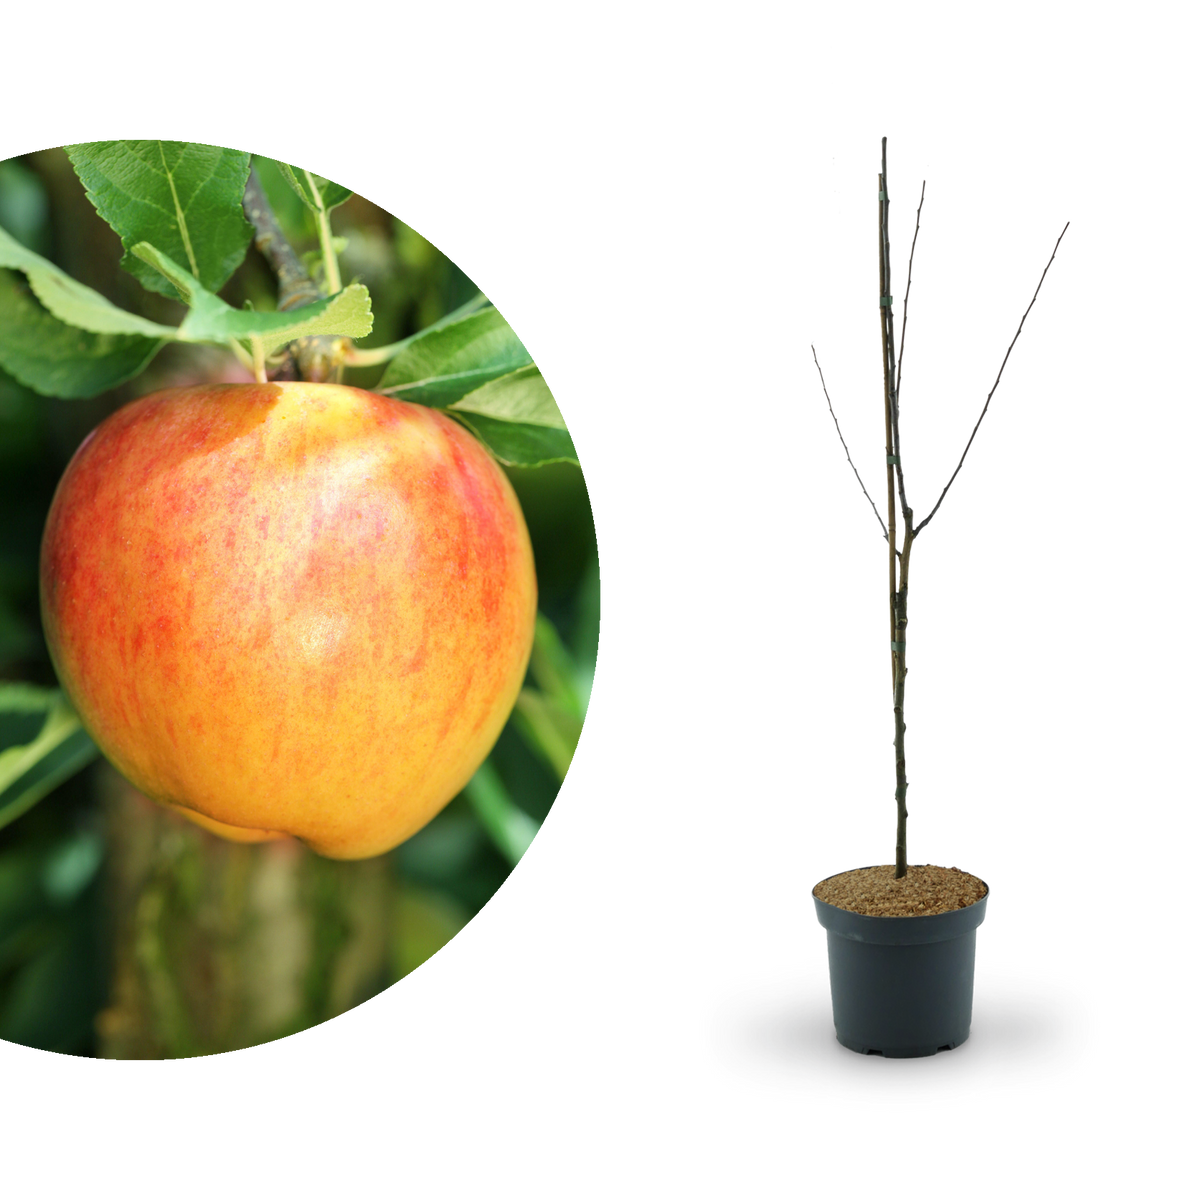 Bio-Apfelbaum 'Alkmene' Herbstapfel kaufen - Plantura Shop